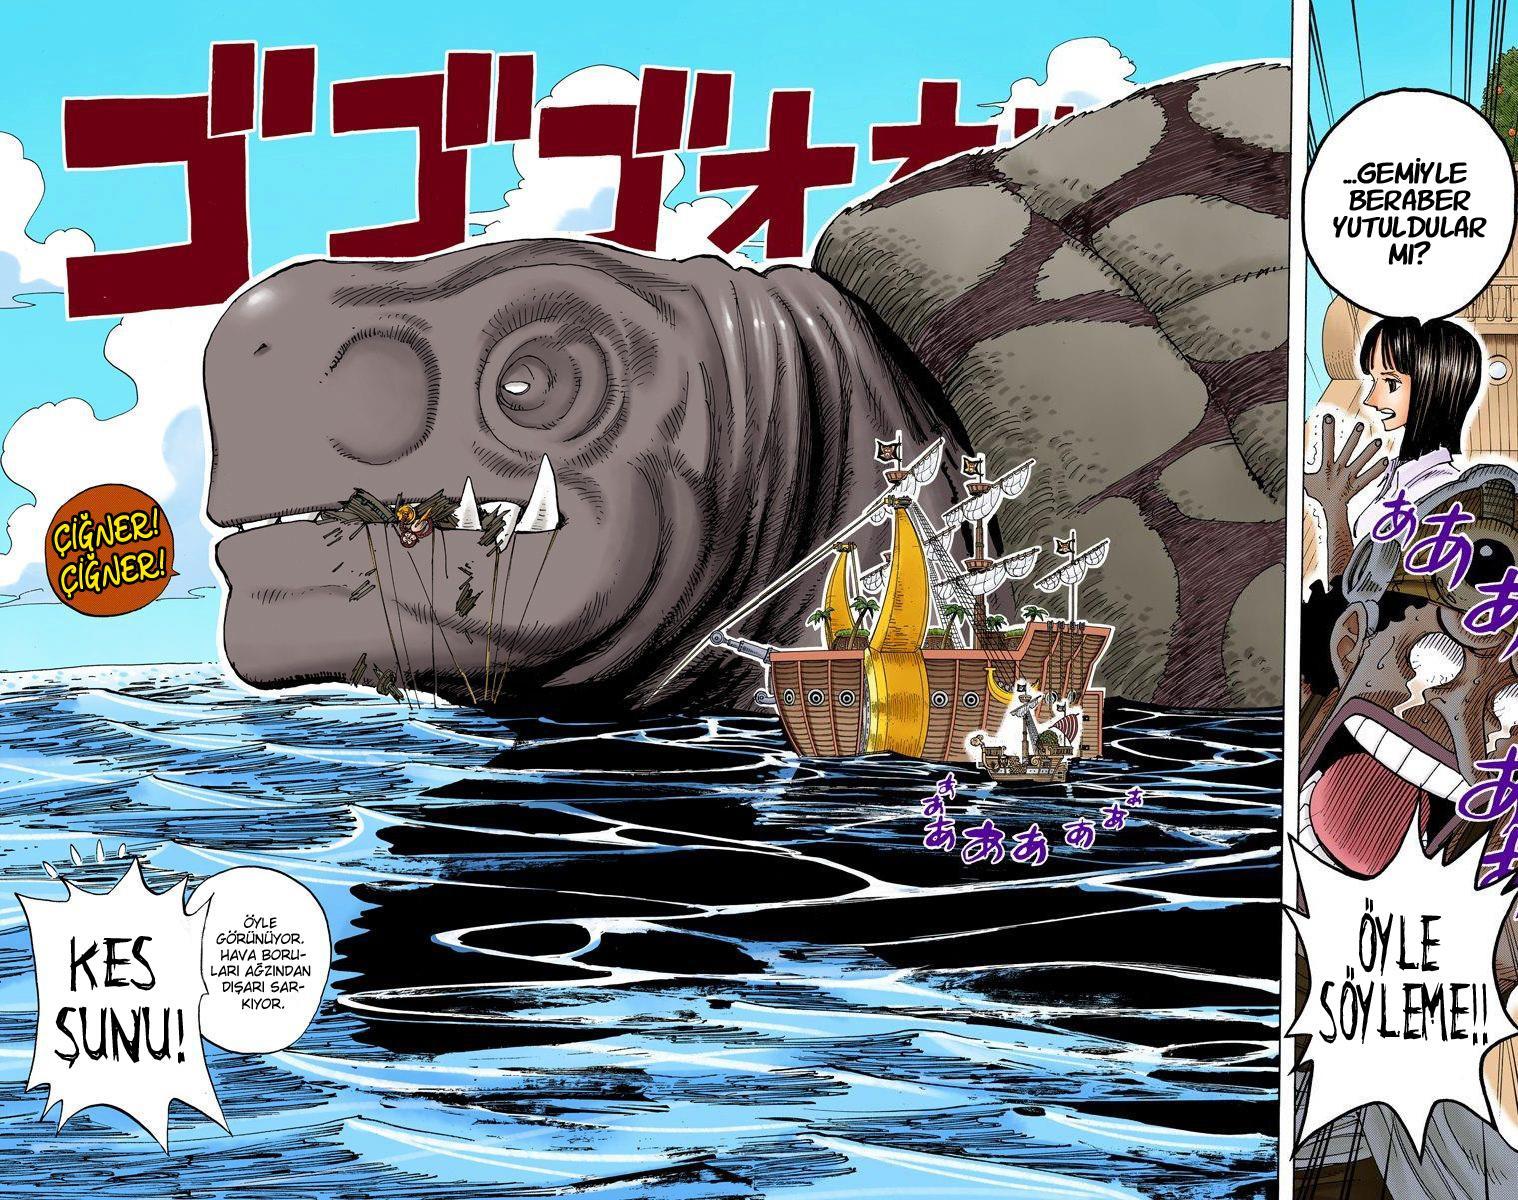 One Piece [Renkli] mangasının 0221 bölümünün 4. sayfasını okuyorsunuz.